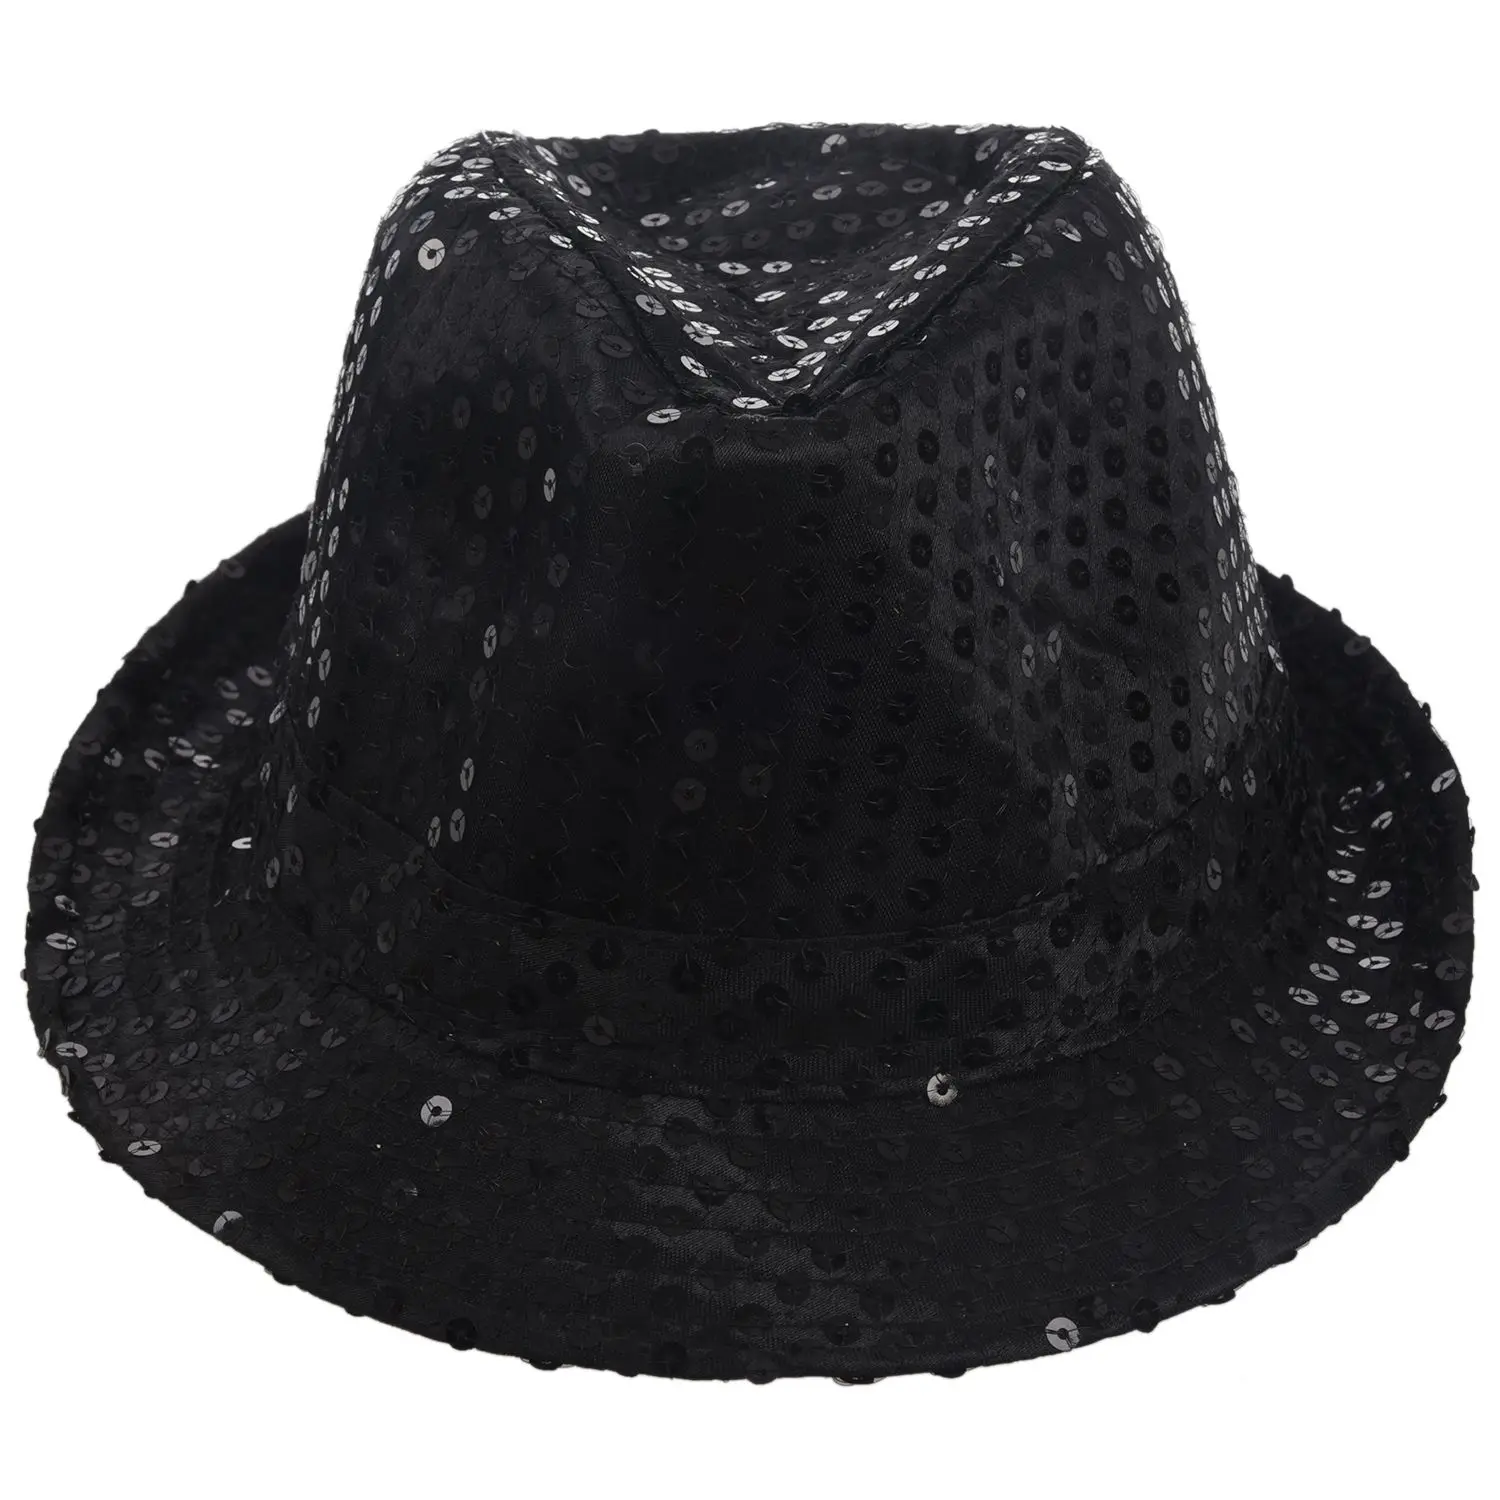 Блестящая шляпа Трилби топ шляпа нарядное платье Вечерние девичник ночной танец театральные шоу, черный